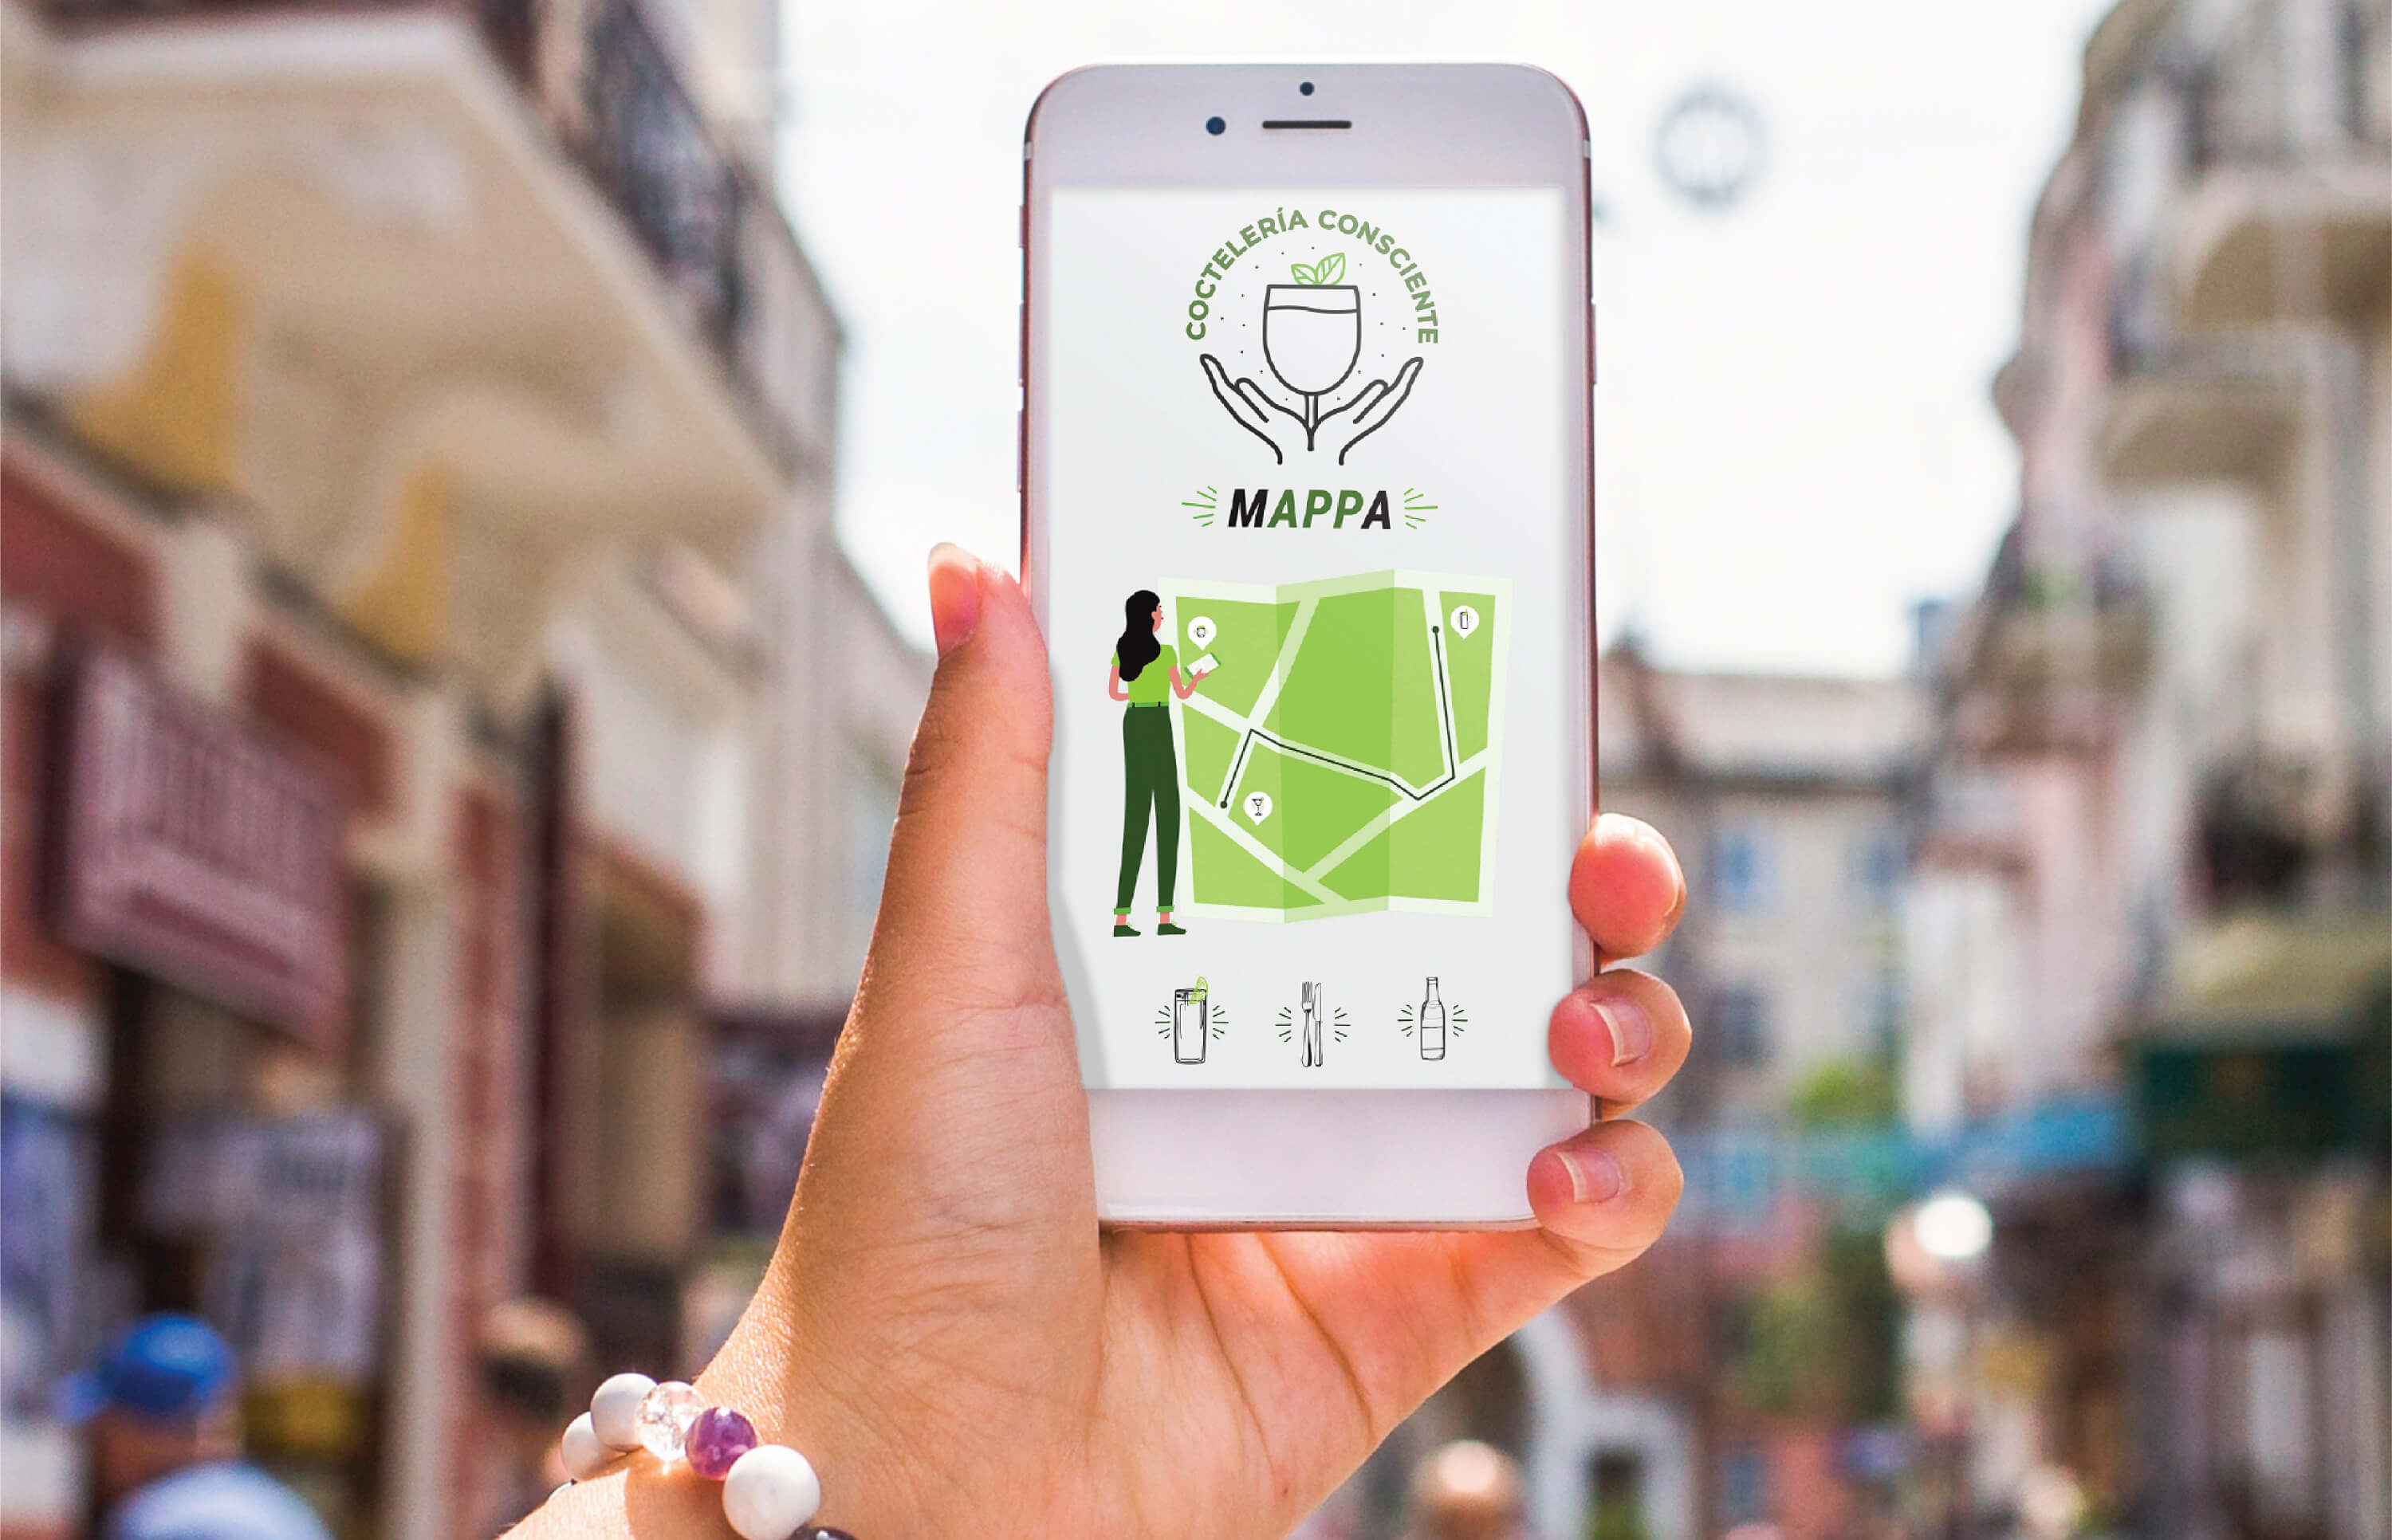 Lanzan un mapa para buscar bares, restaurantes y hoteles inclusivos y sustentables